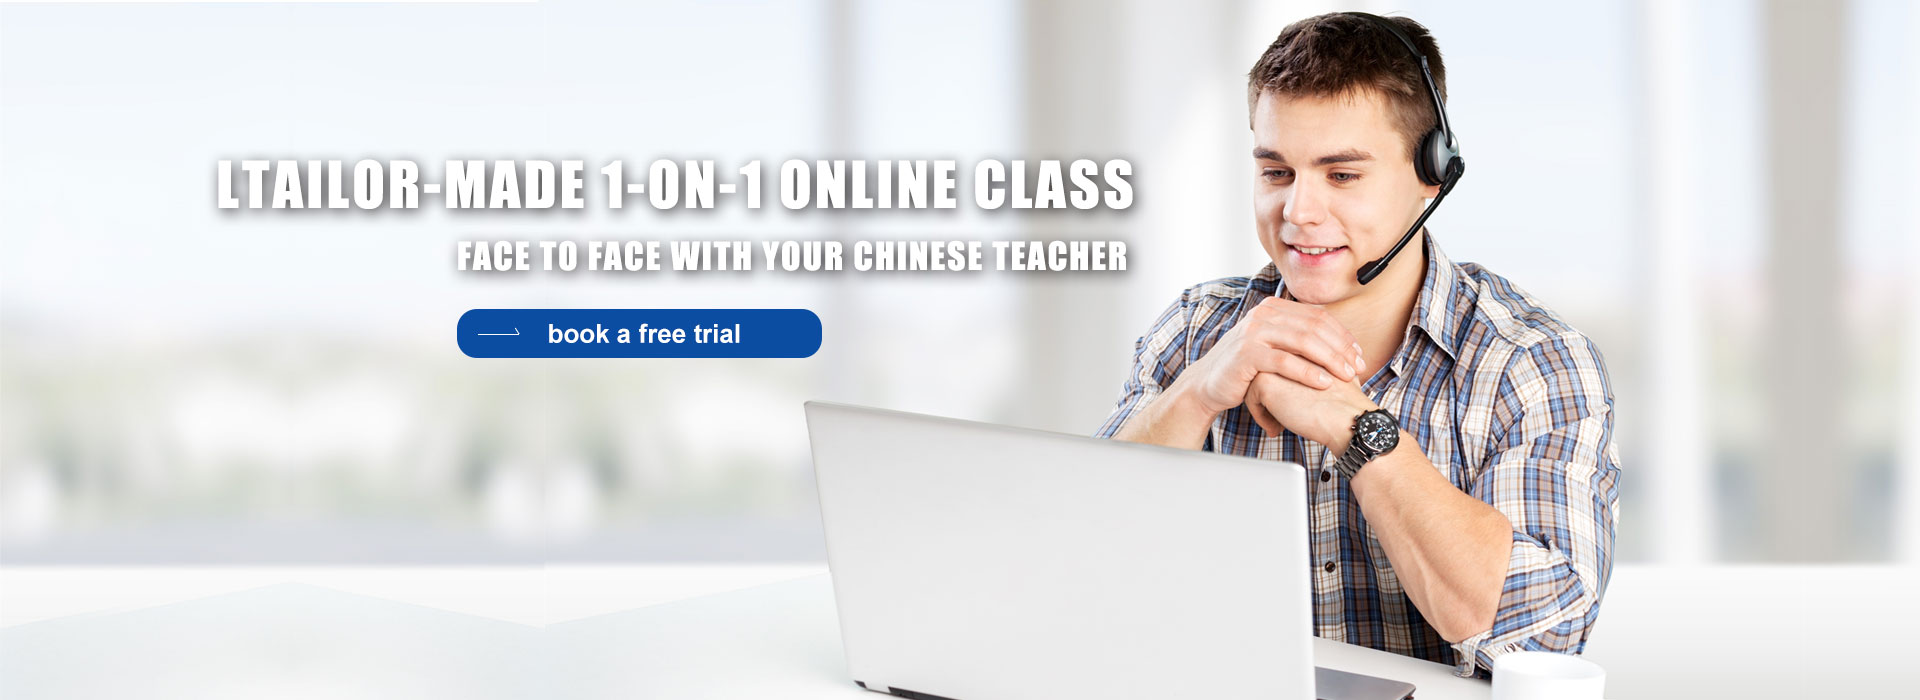 کلاس آنلاین چینی